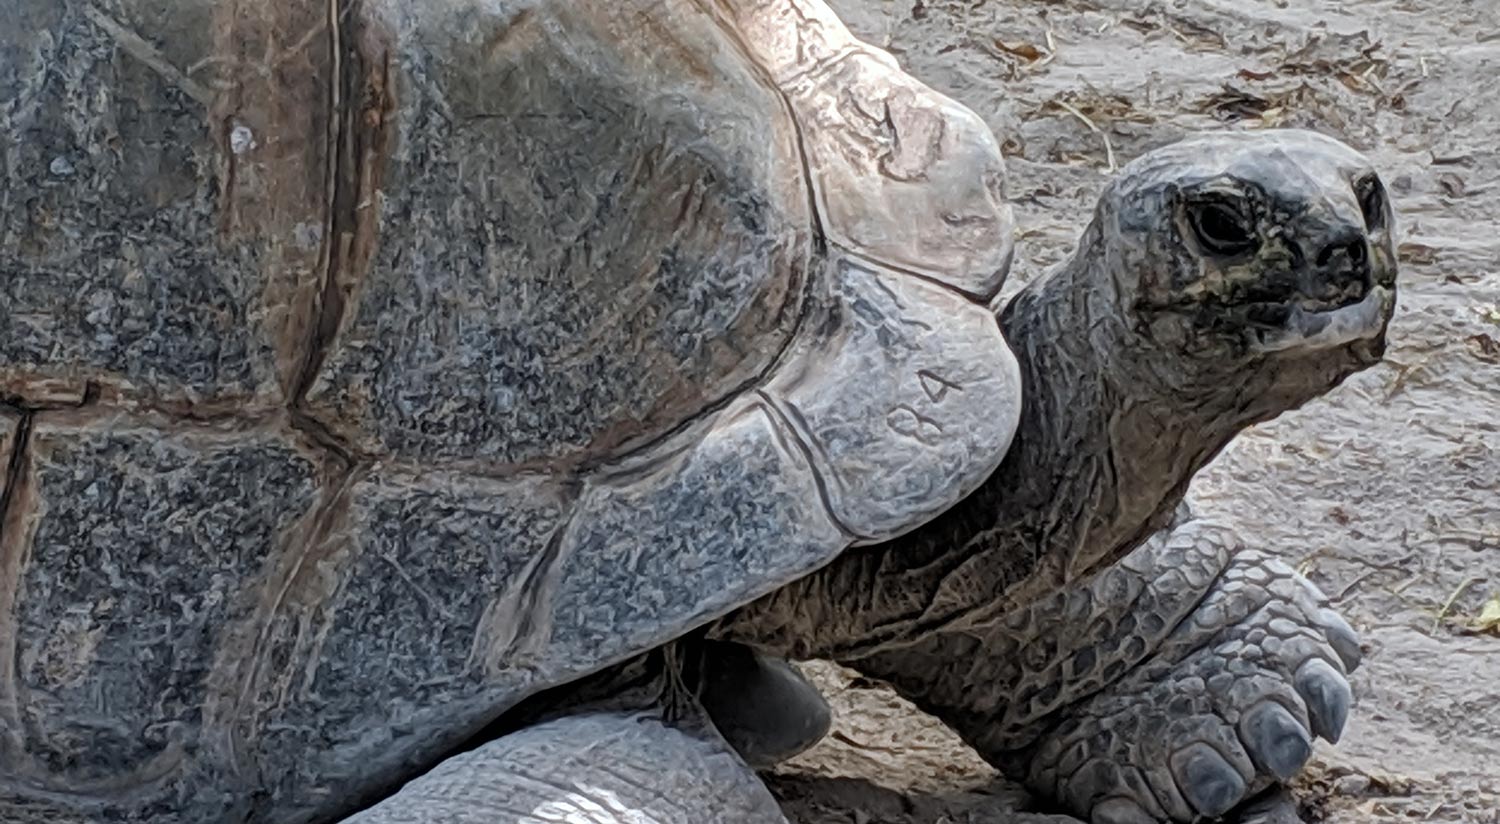 Tortoise at Jungle Island in Miami